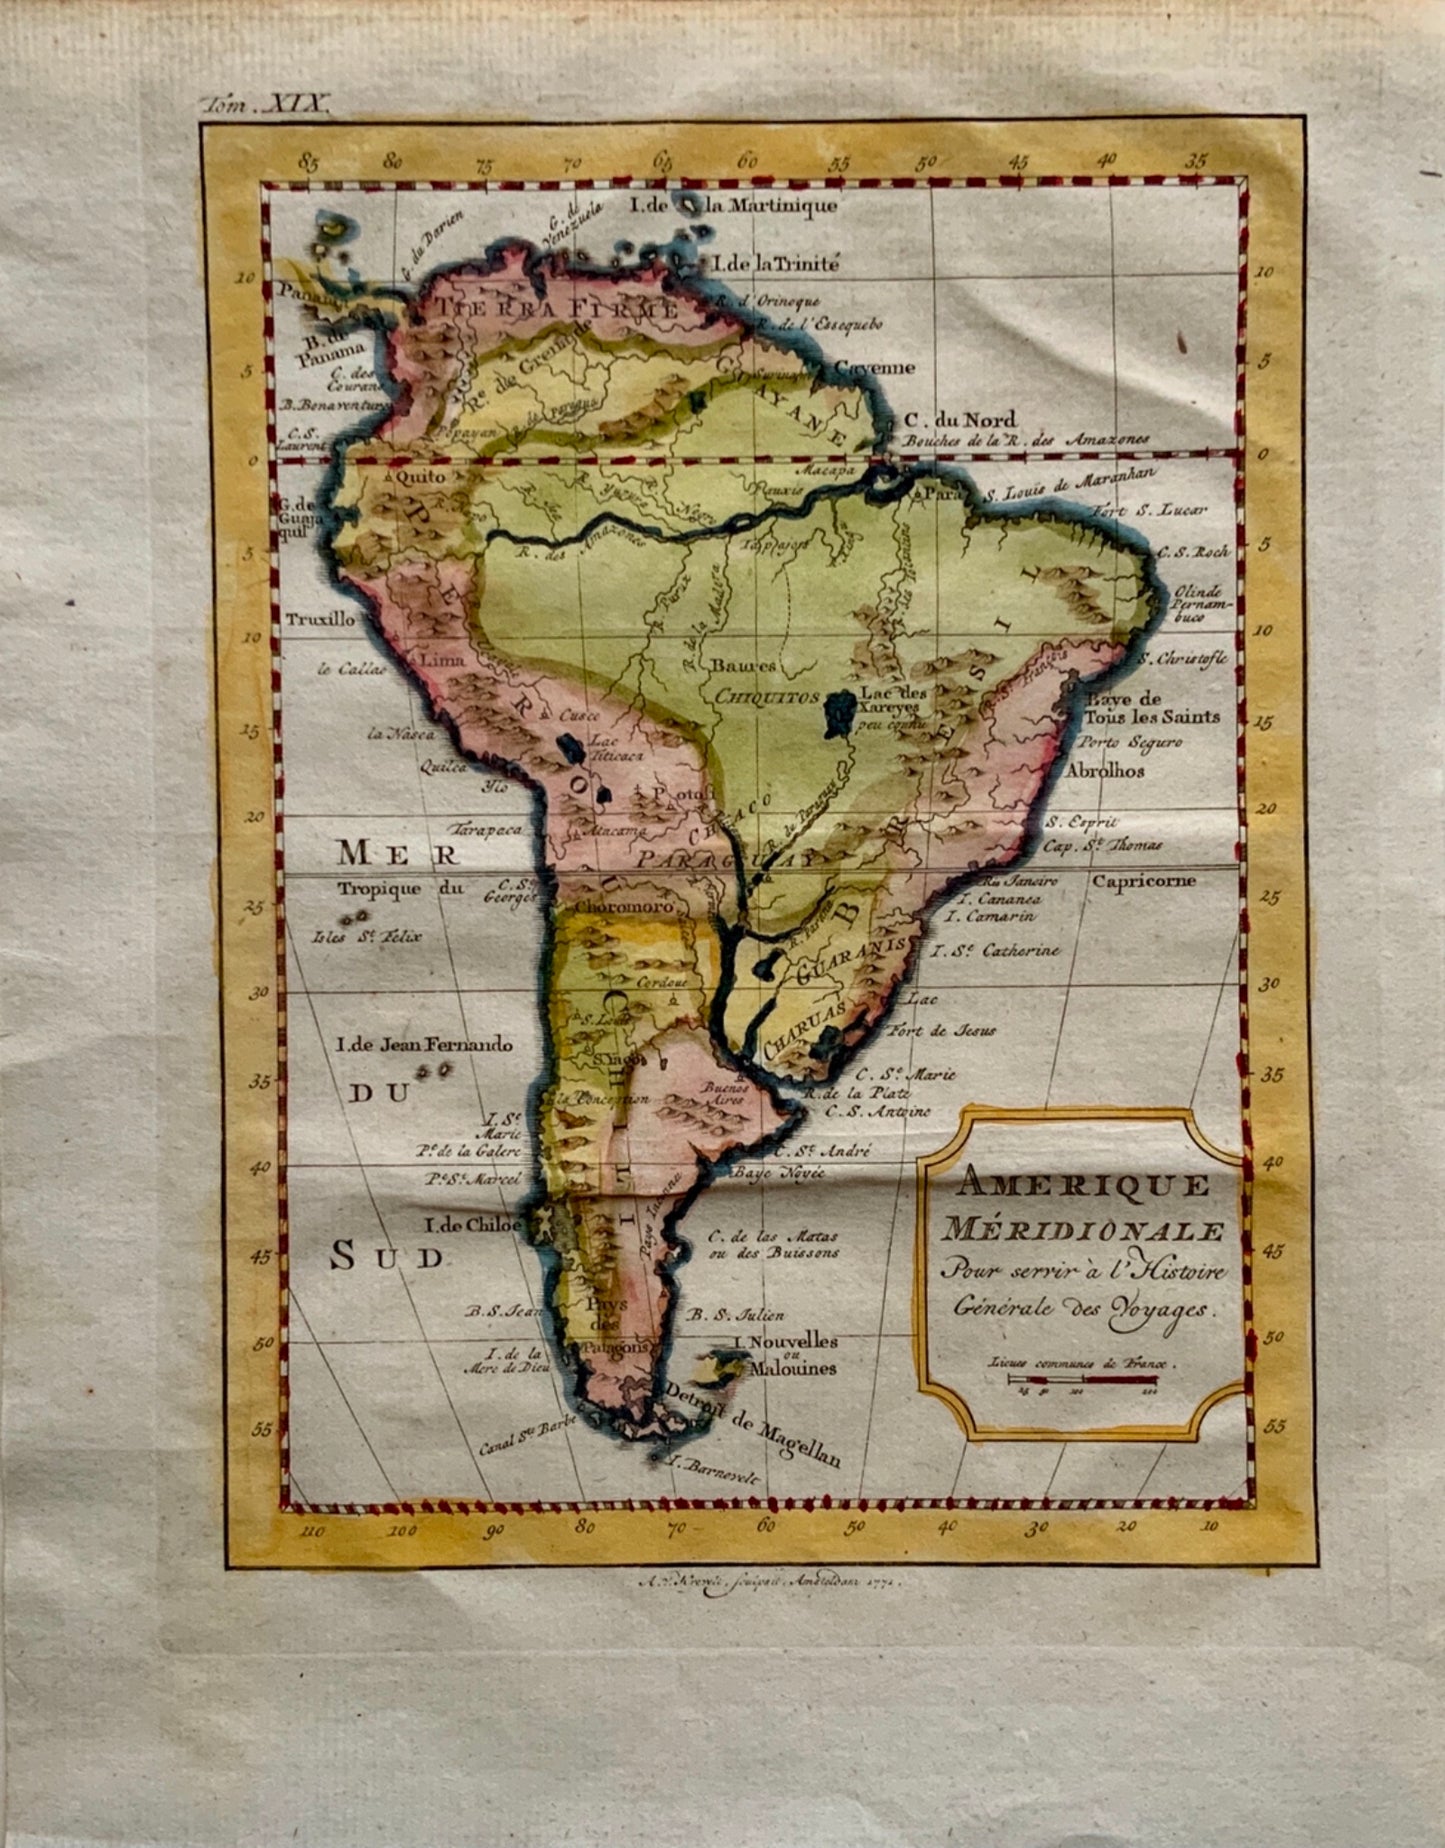 1774 Bellin; Krevelt - Amérique Meridionale - Map of South America